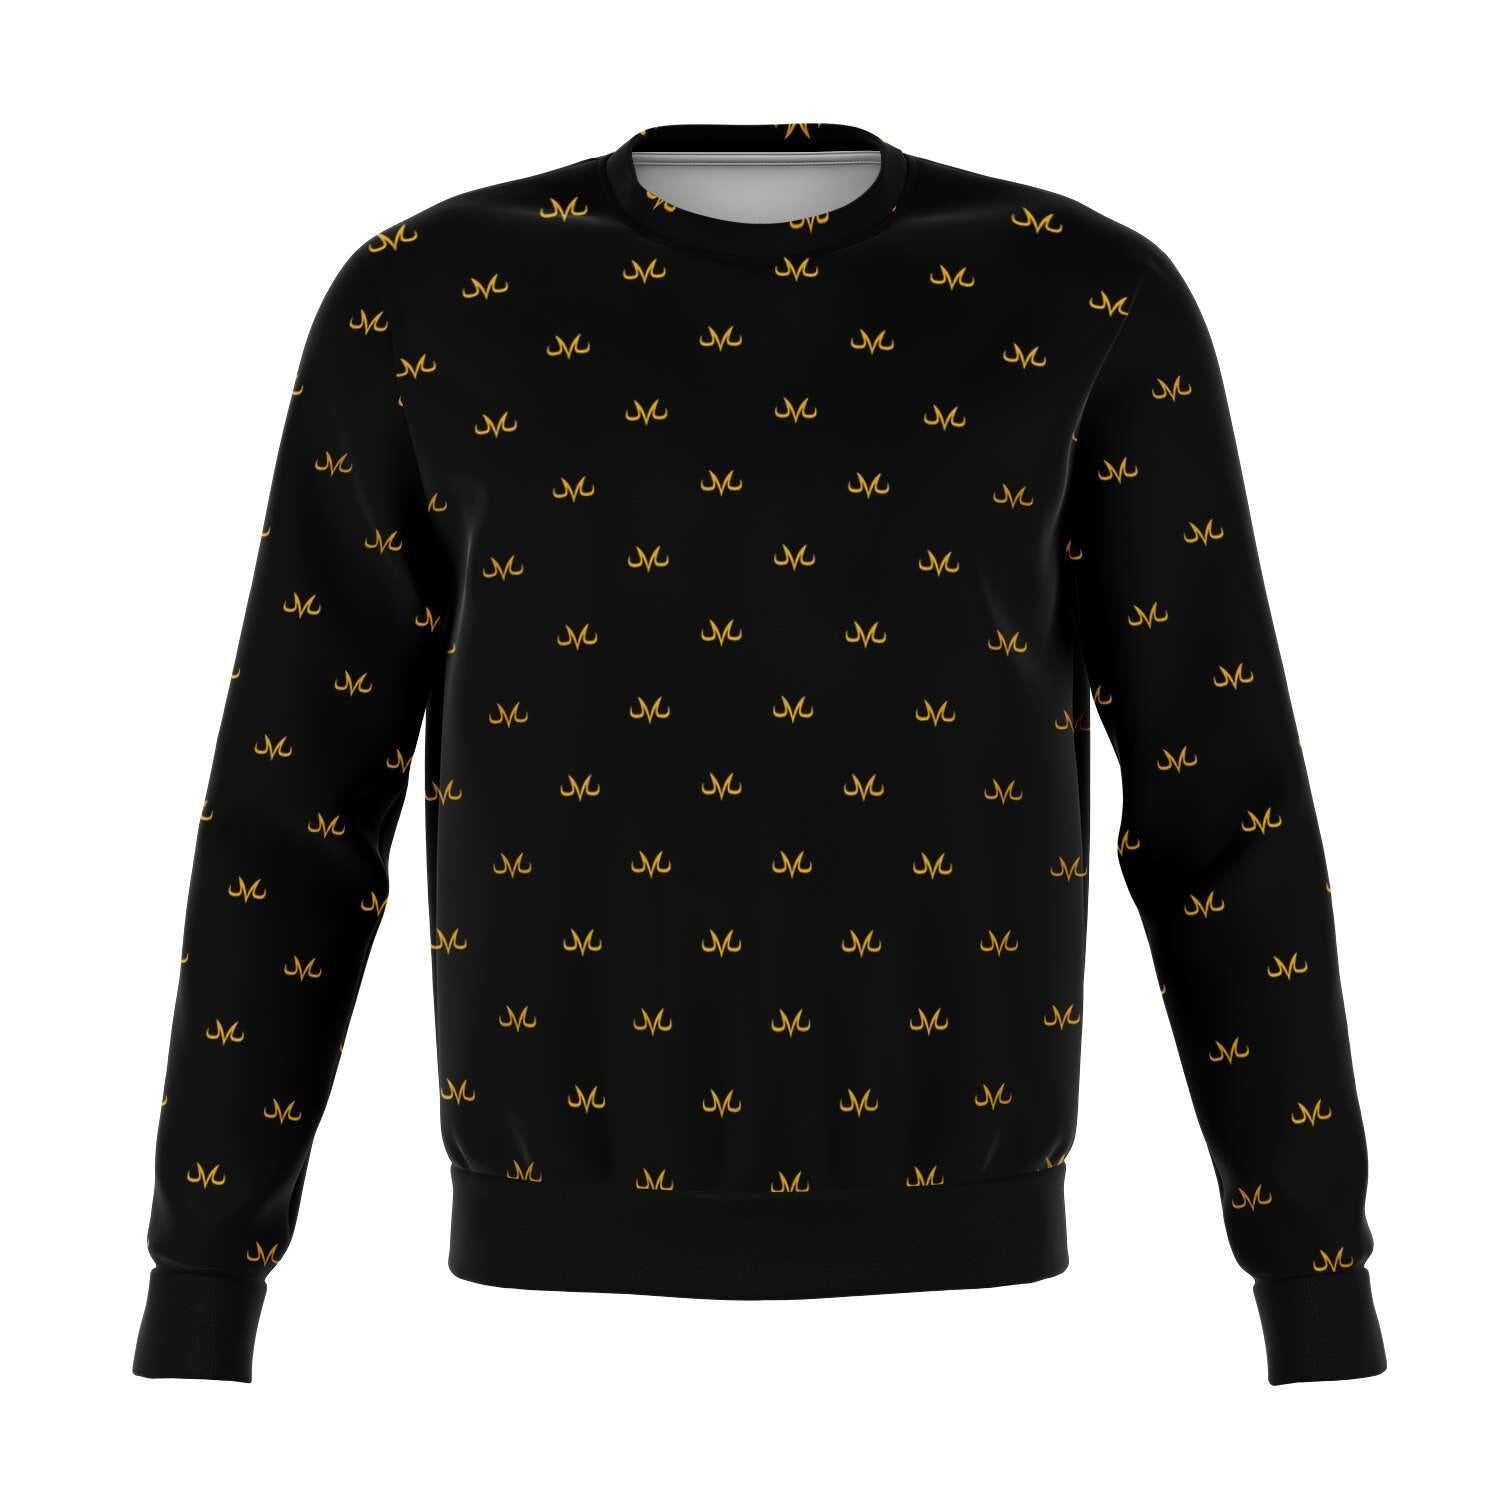 Majin Pattern Sweater - PlanetGoku